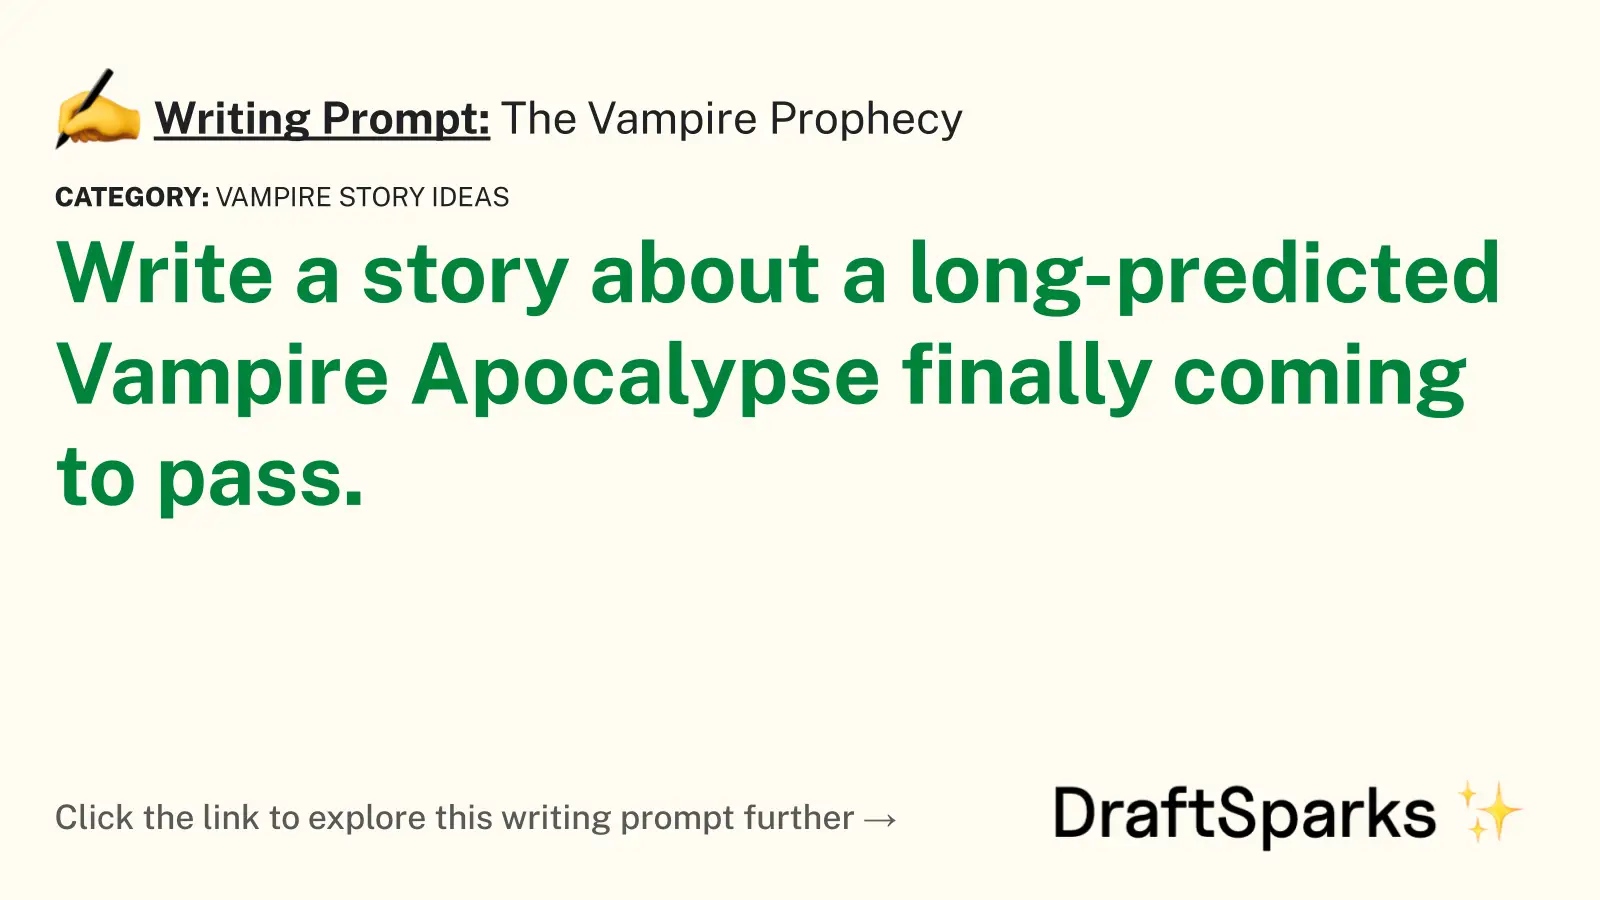 The Vampire Prophecy